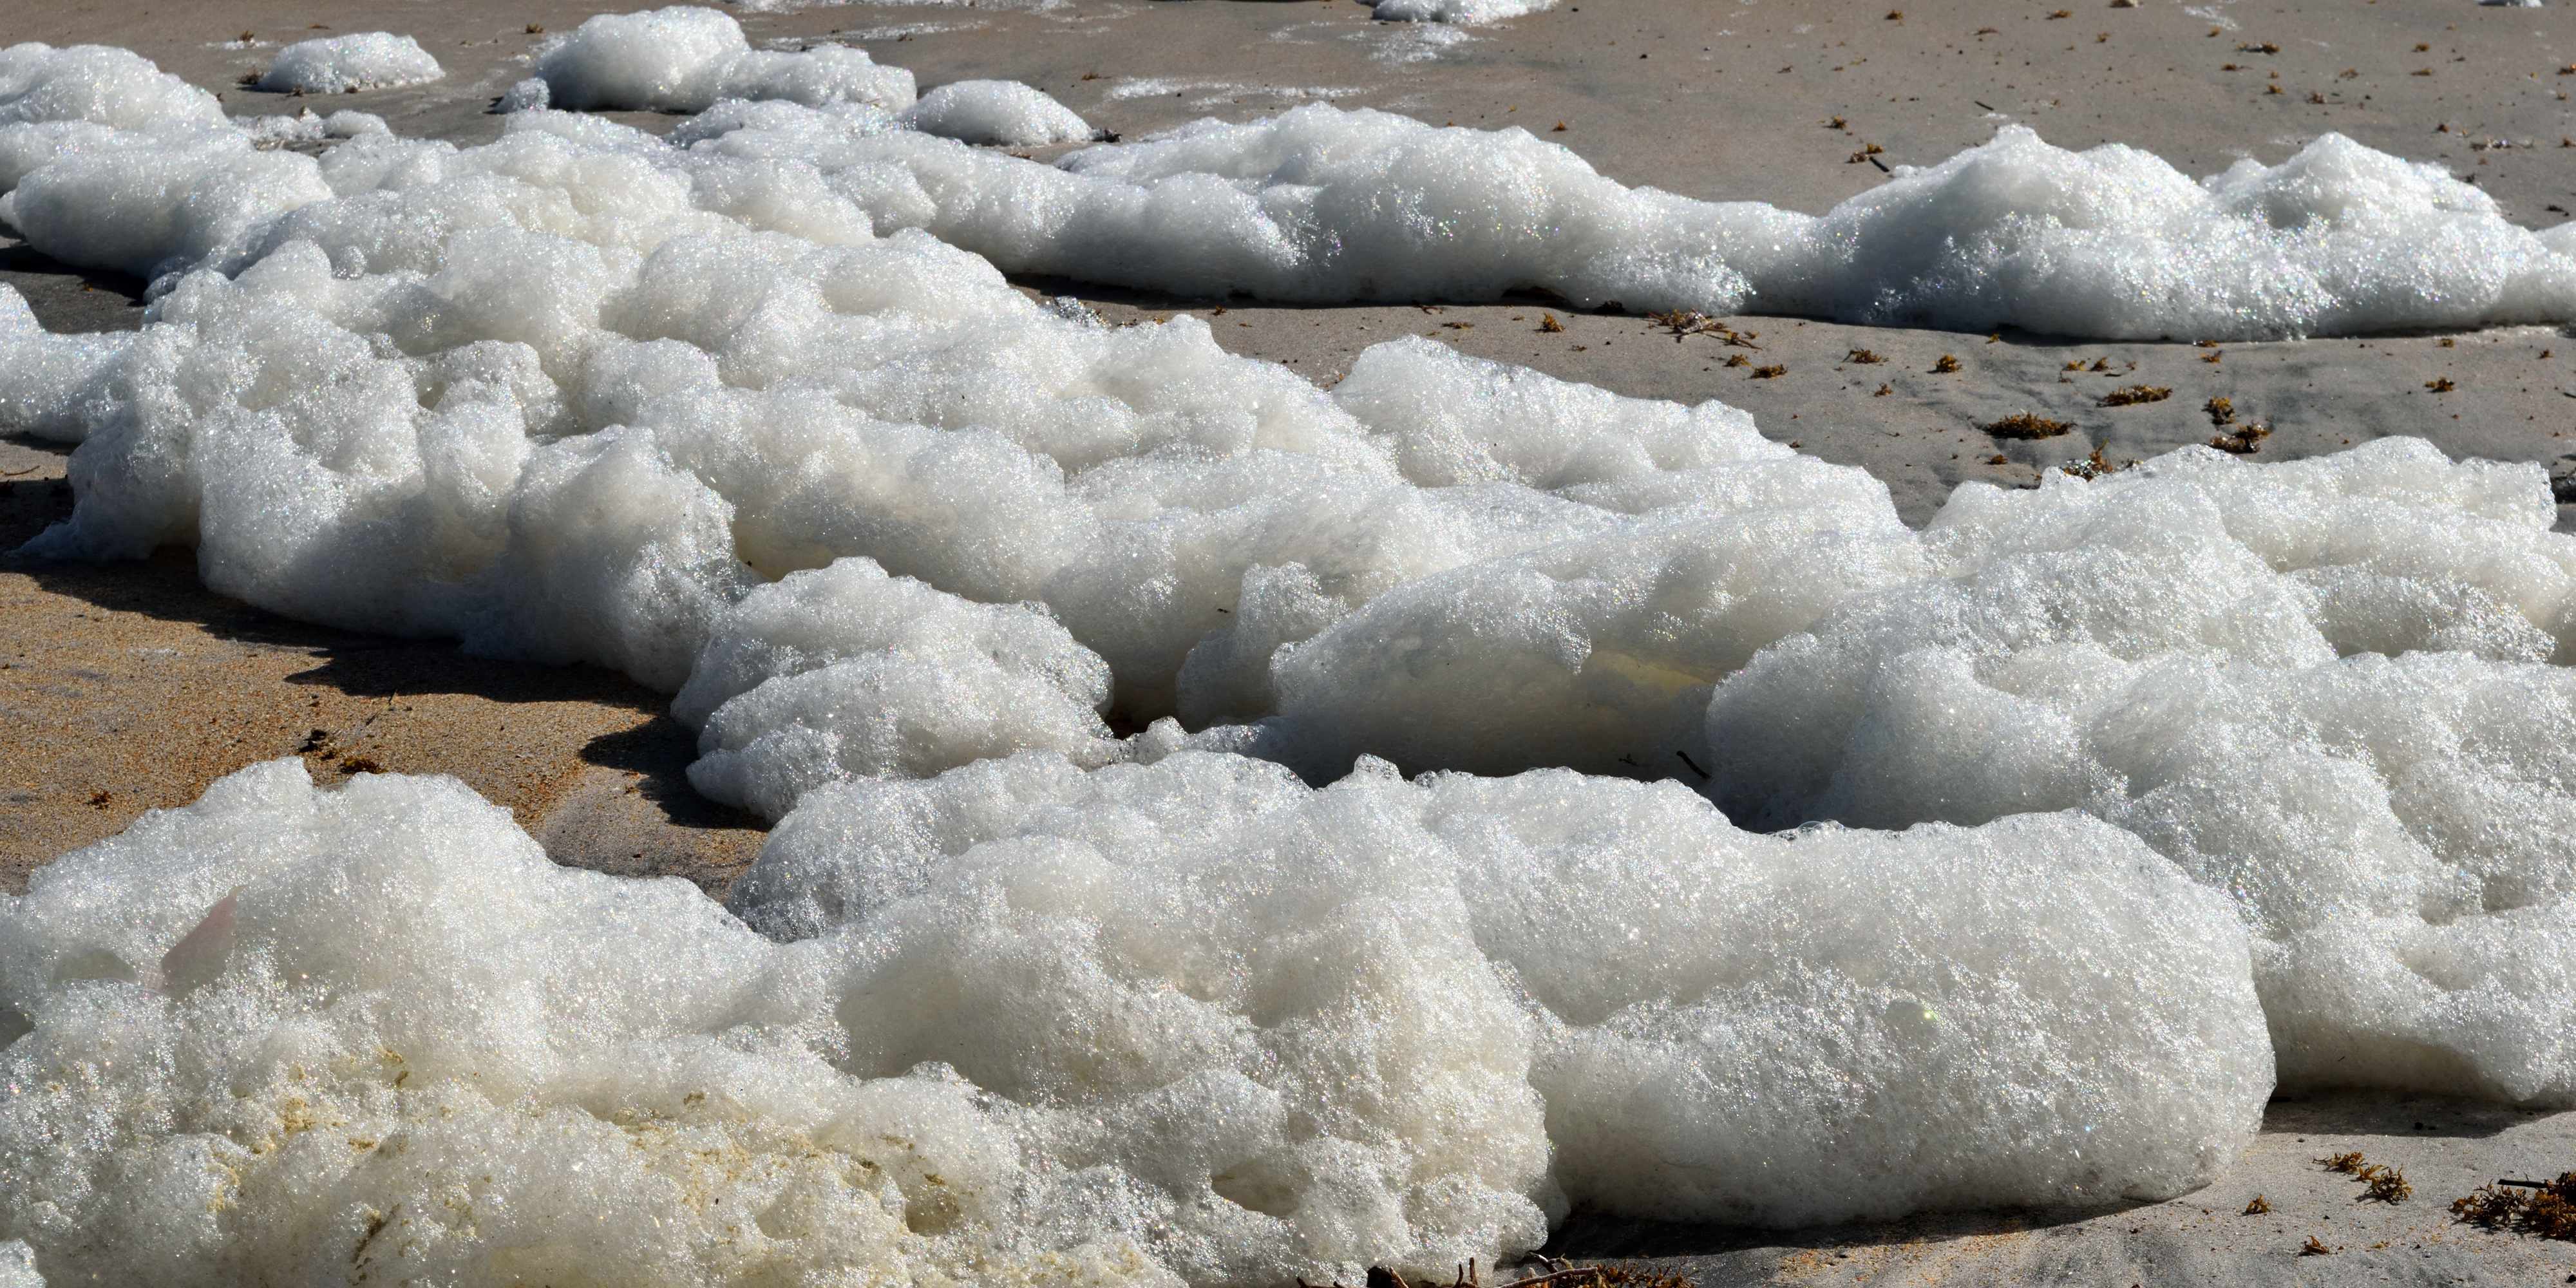 What is sea foam?